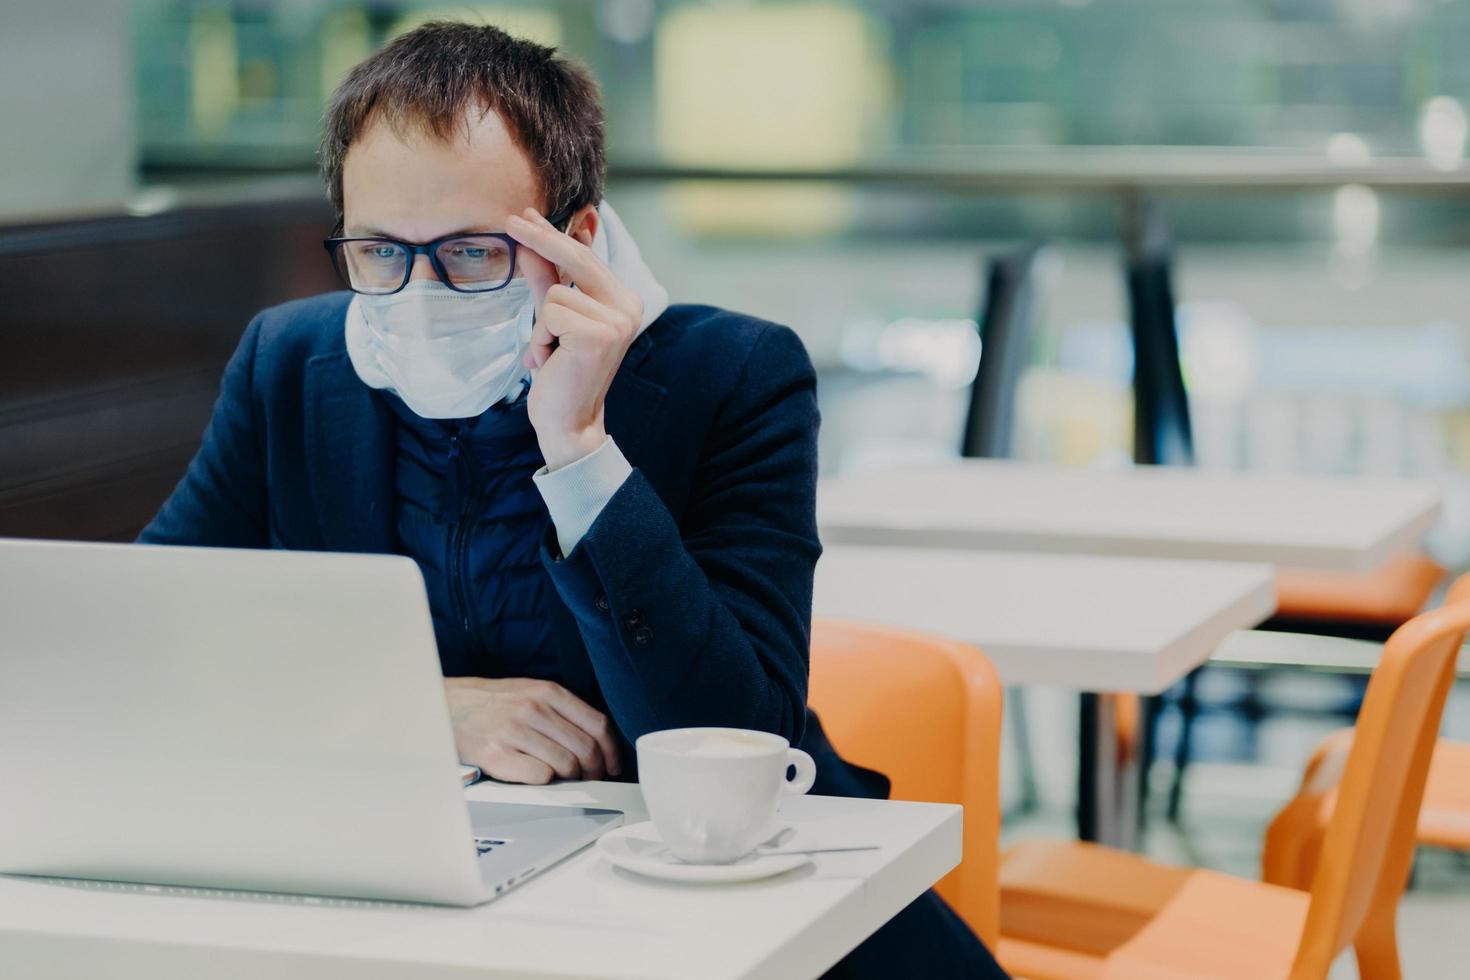 homme portant un masque médical et des lunettes, assis devant un ordinateur portable moderne, pose dans une cafétéria confortable, lit des nouvelles sur le coronavirus, préoccupé par la santé, boit du café. quarantaine épidémique photo